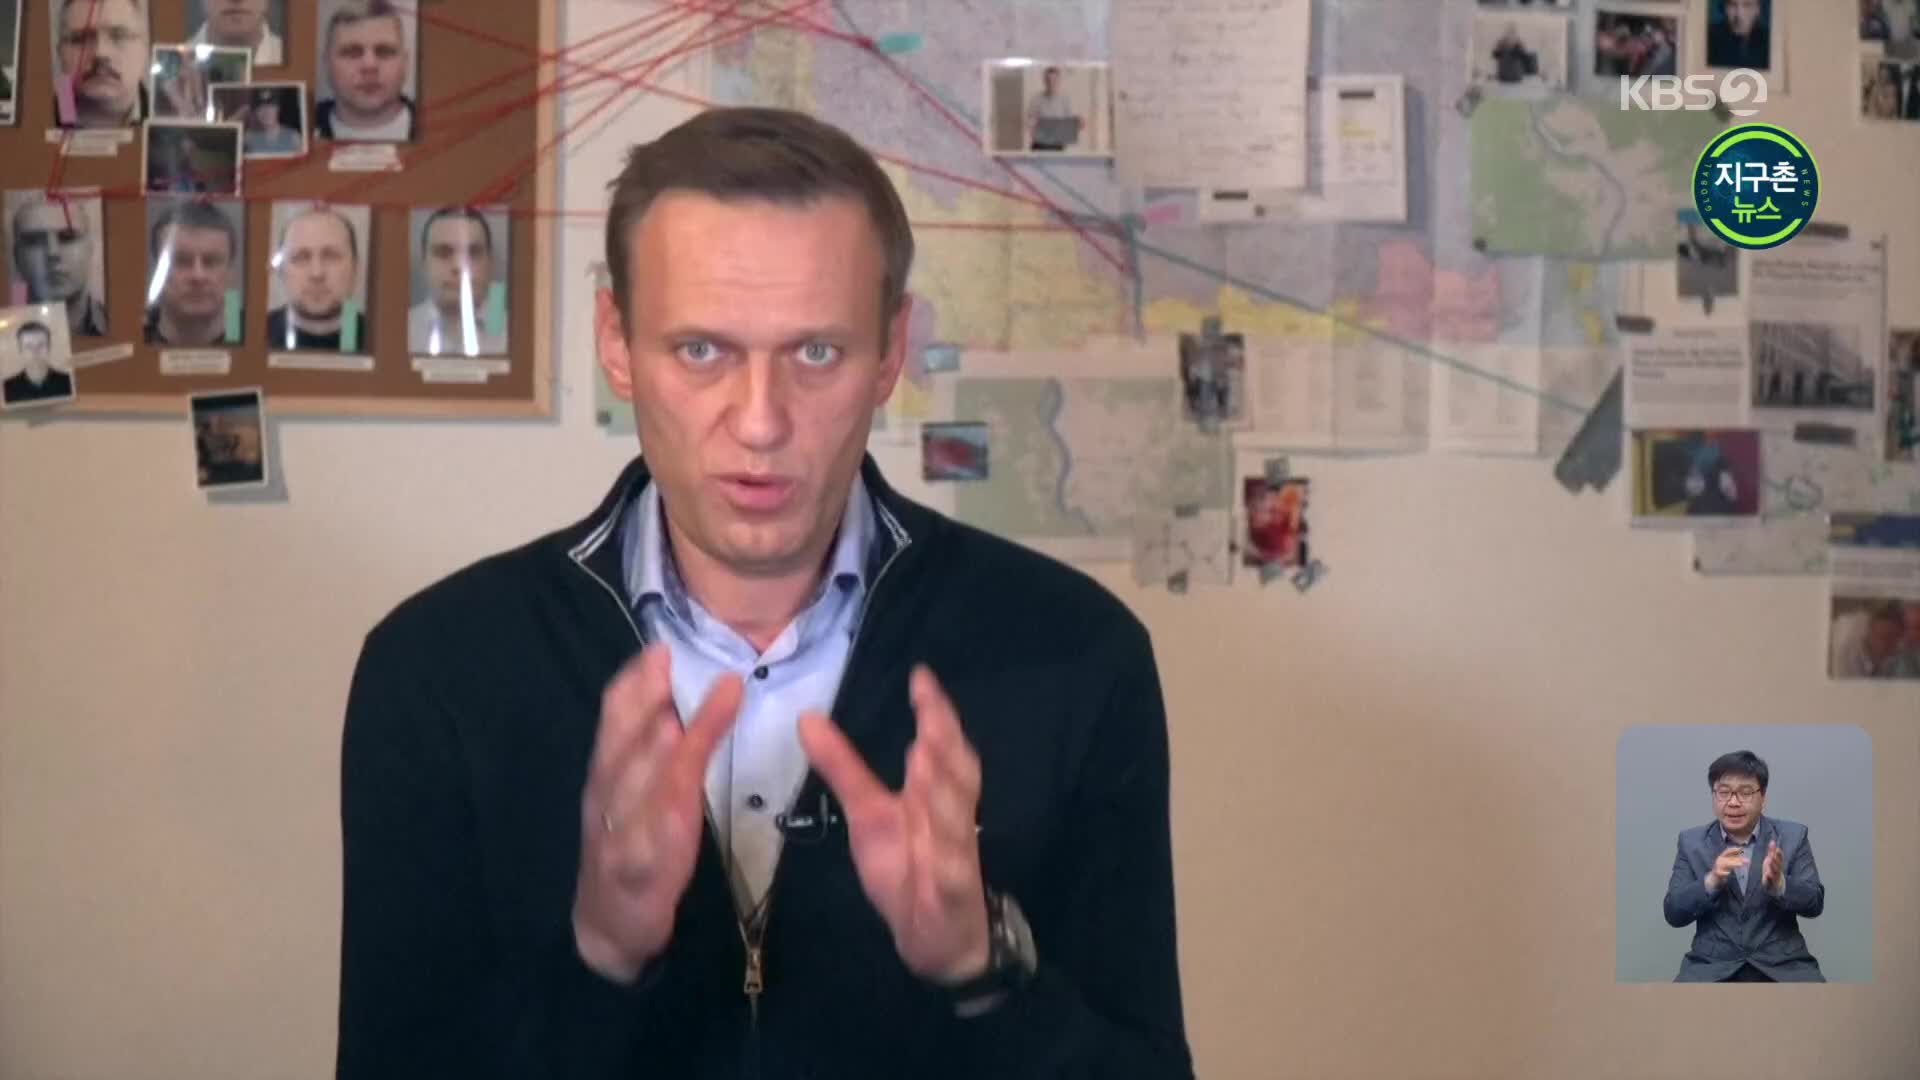 CNN “러시아, 속옷에 독극물 묻혀 나발니 암살 시도”